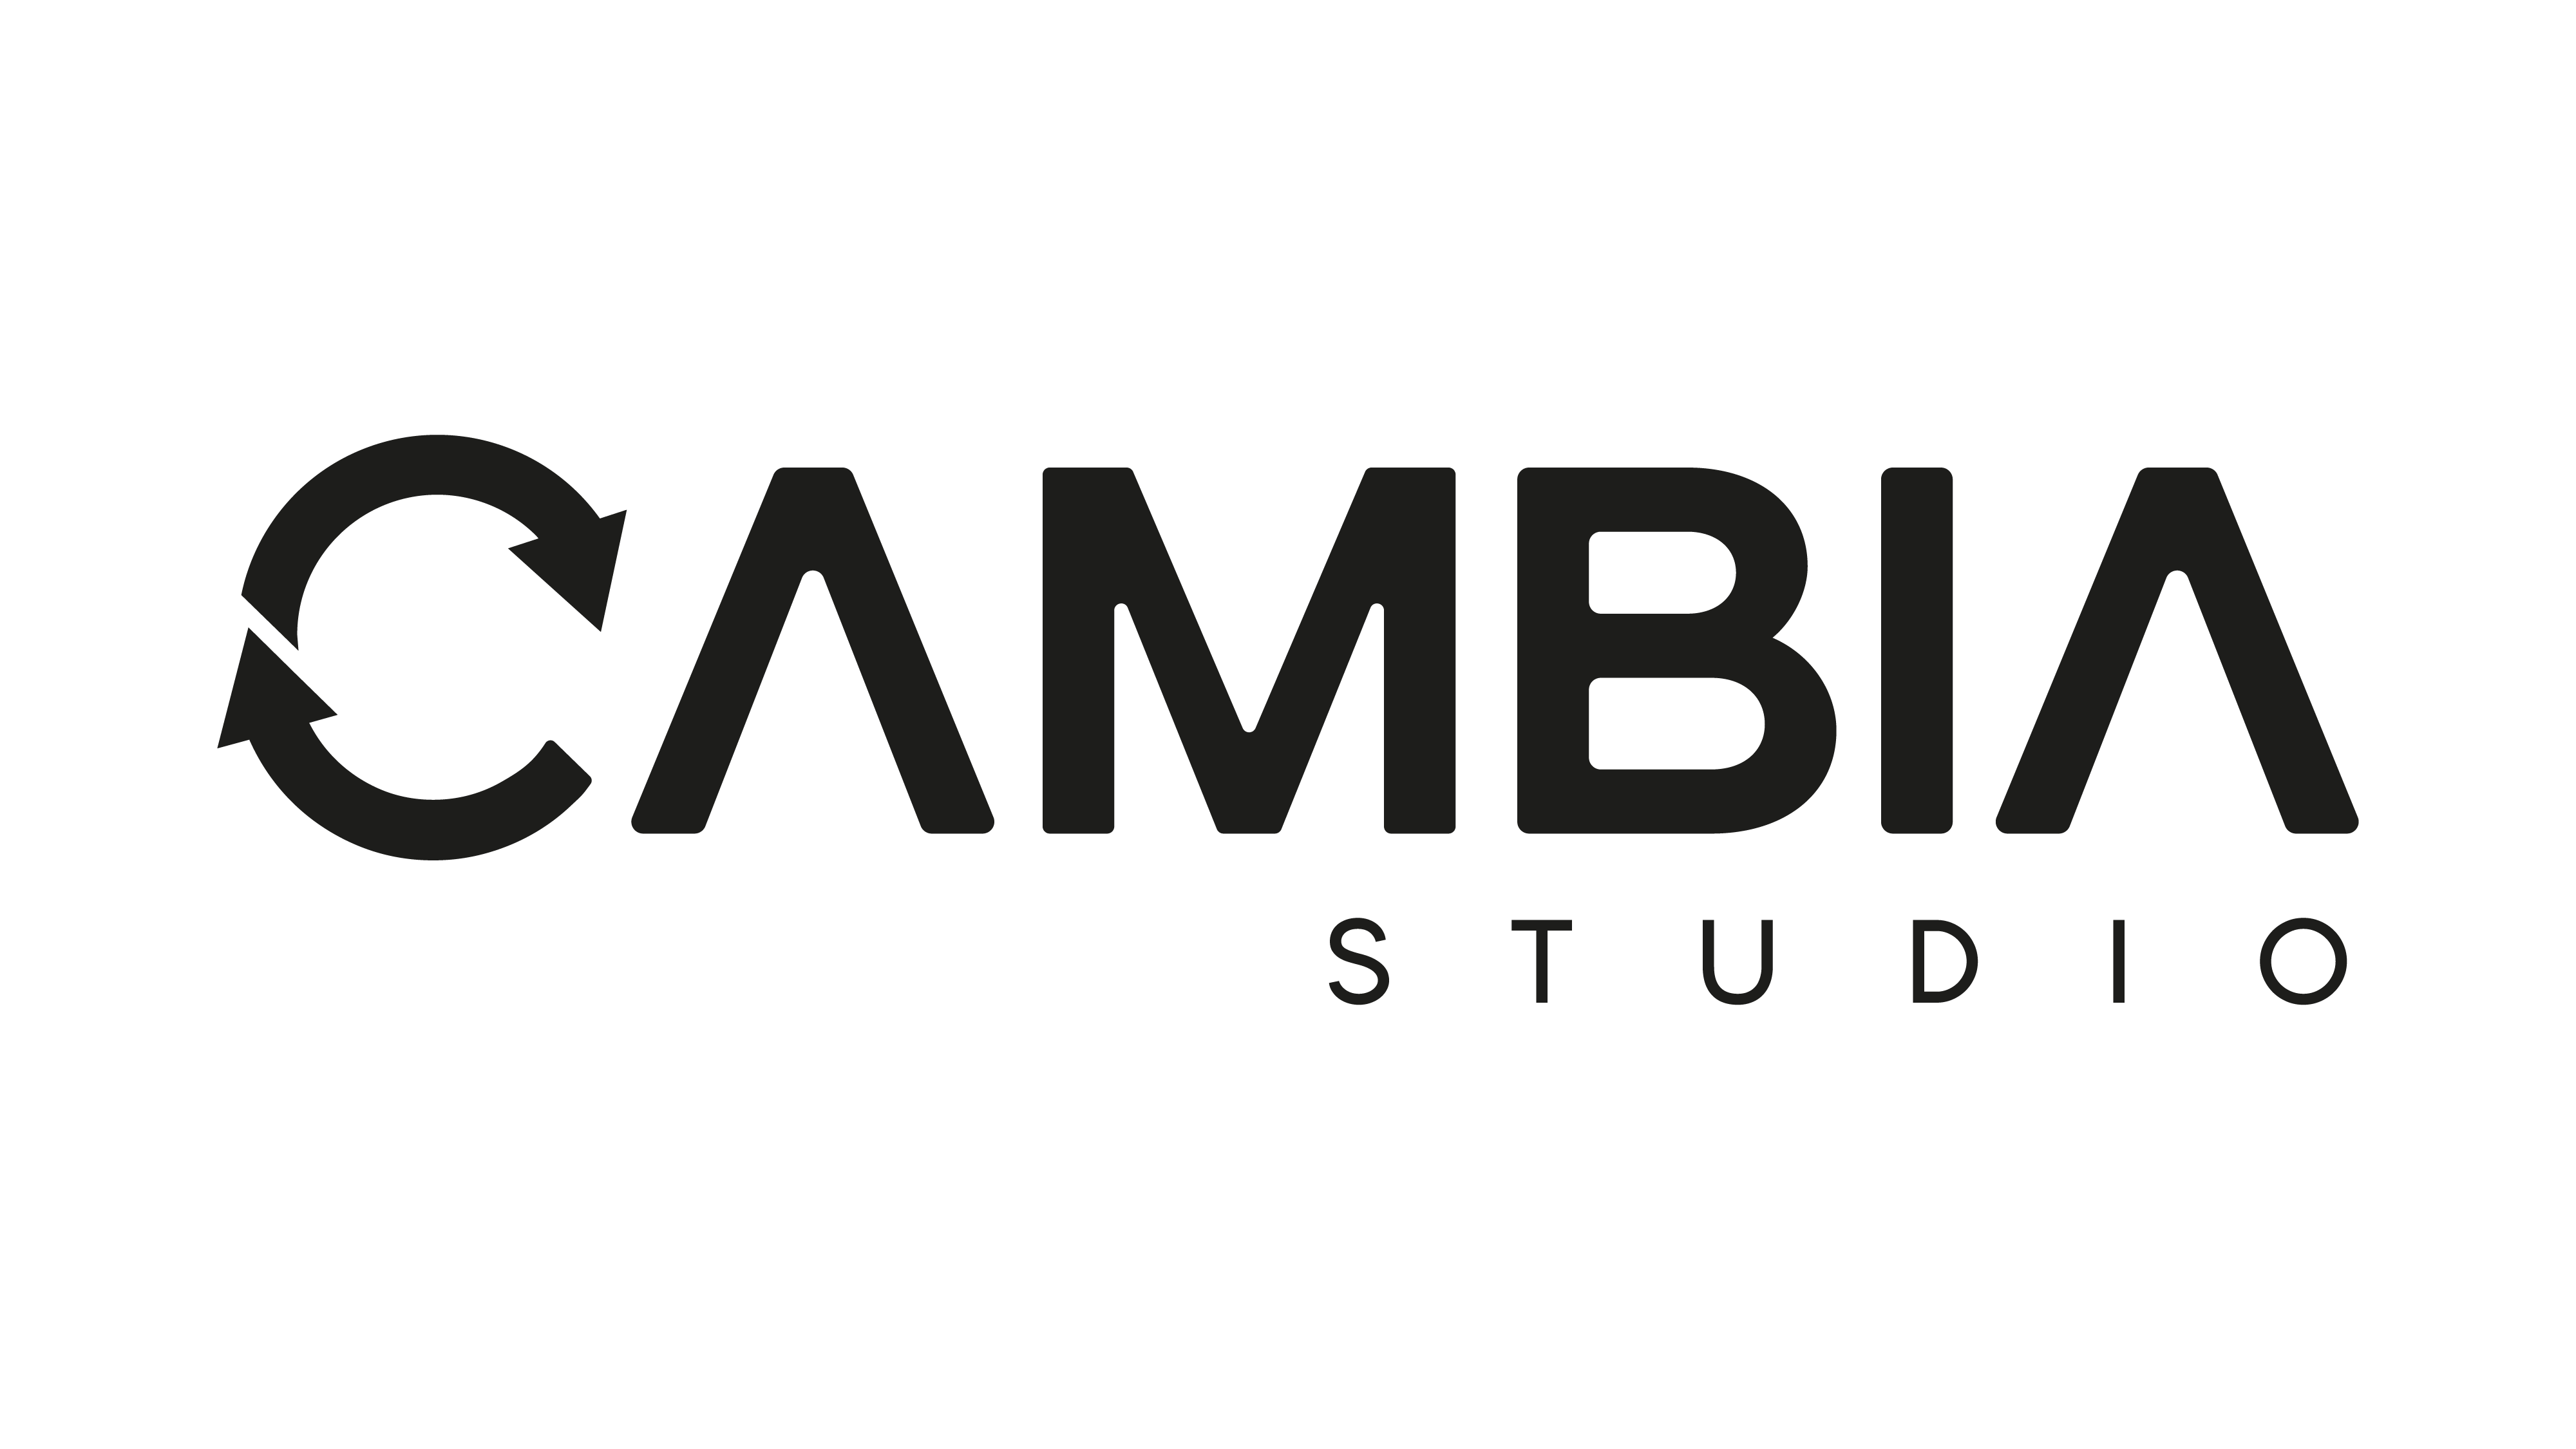 CAMBIA STUDIO